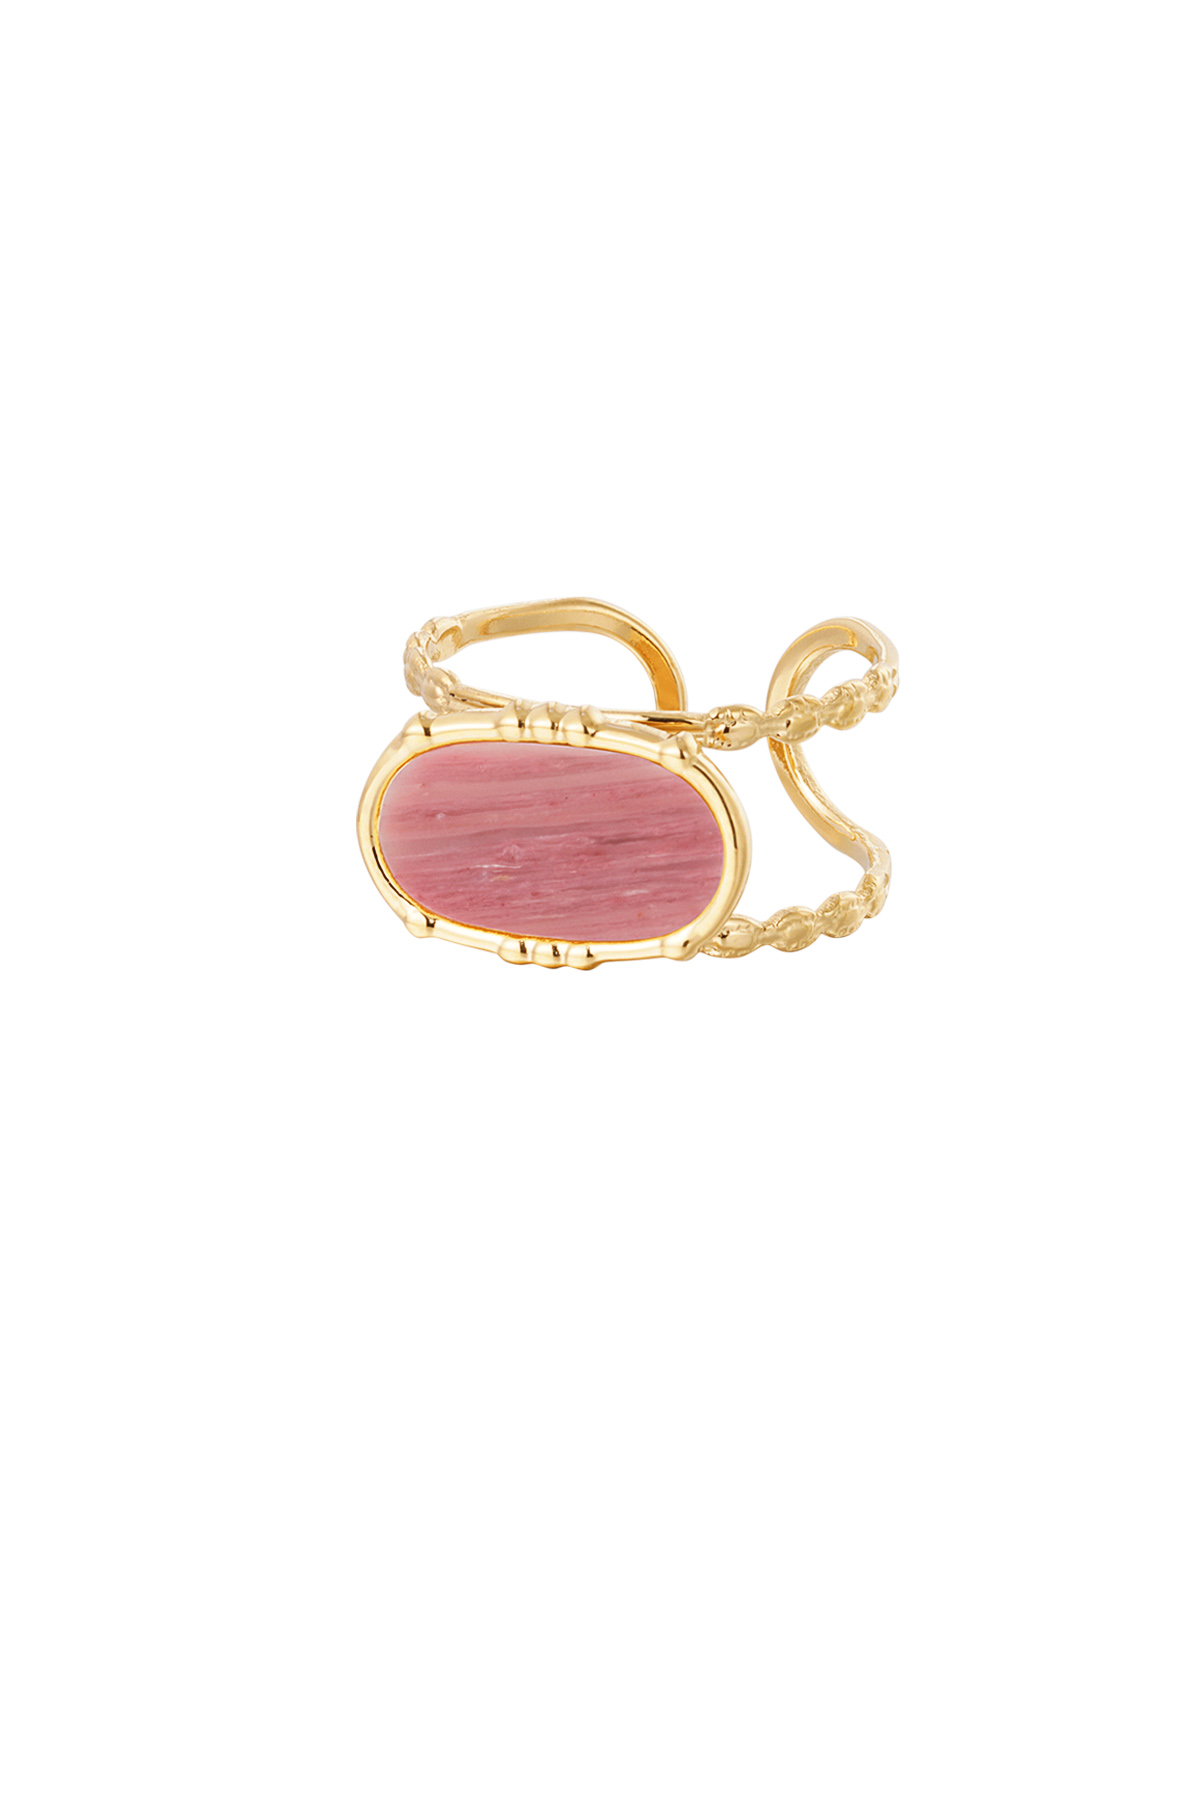 Ring klassiek langwerpige steen - goud/roze h5 